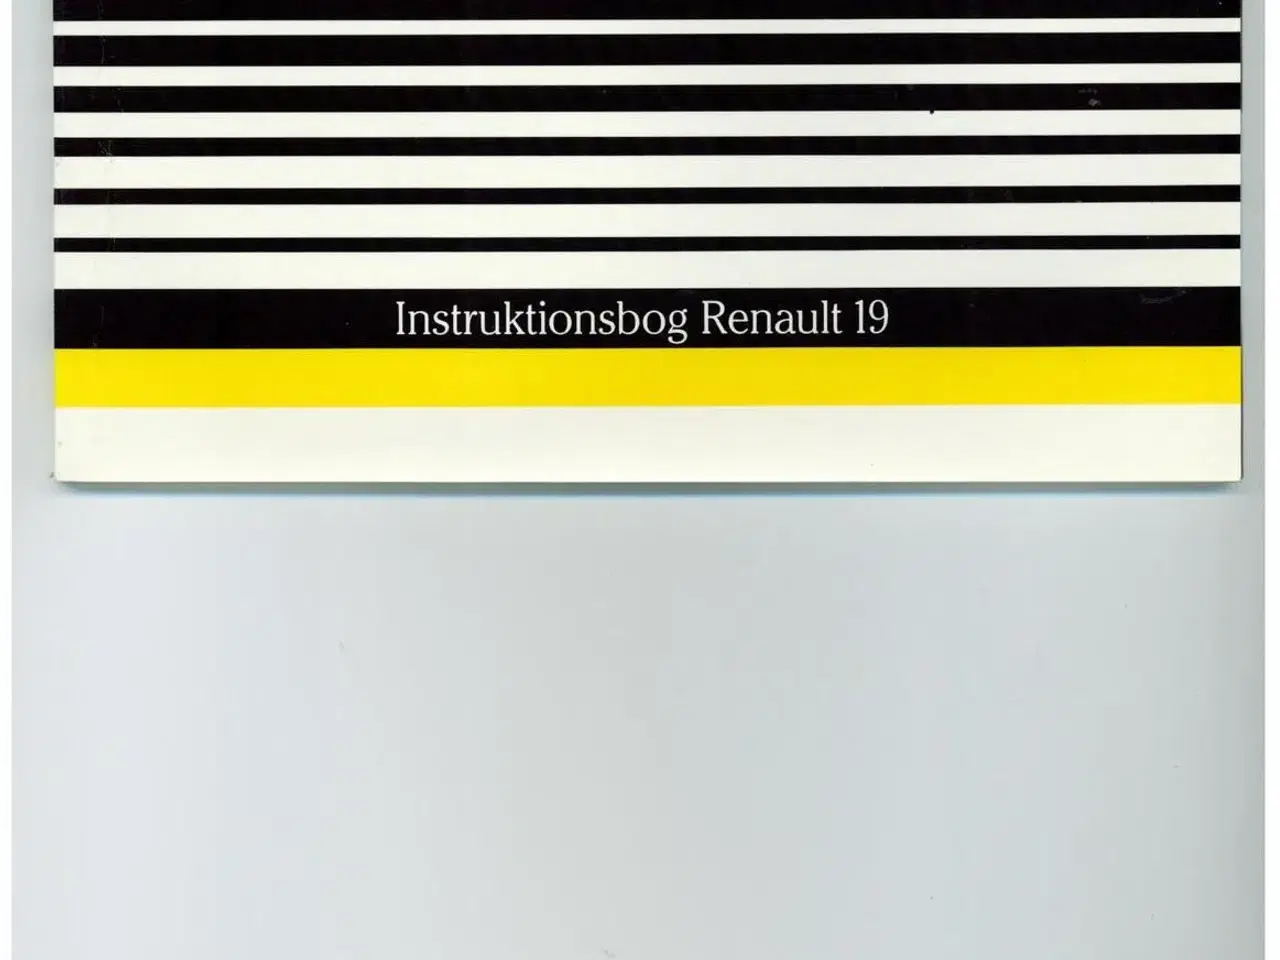 Billede 1 - Instruktionsbog, Renault 19.